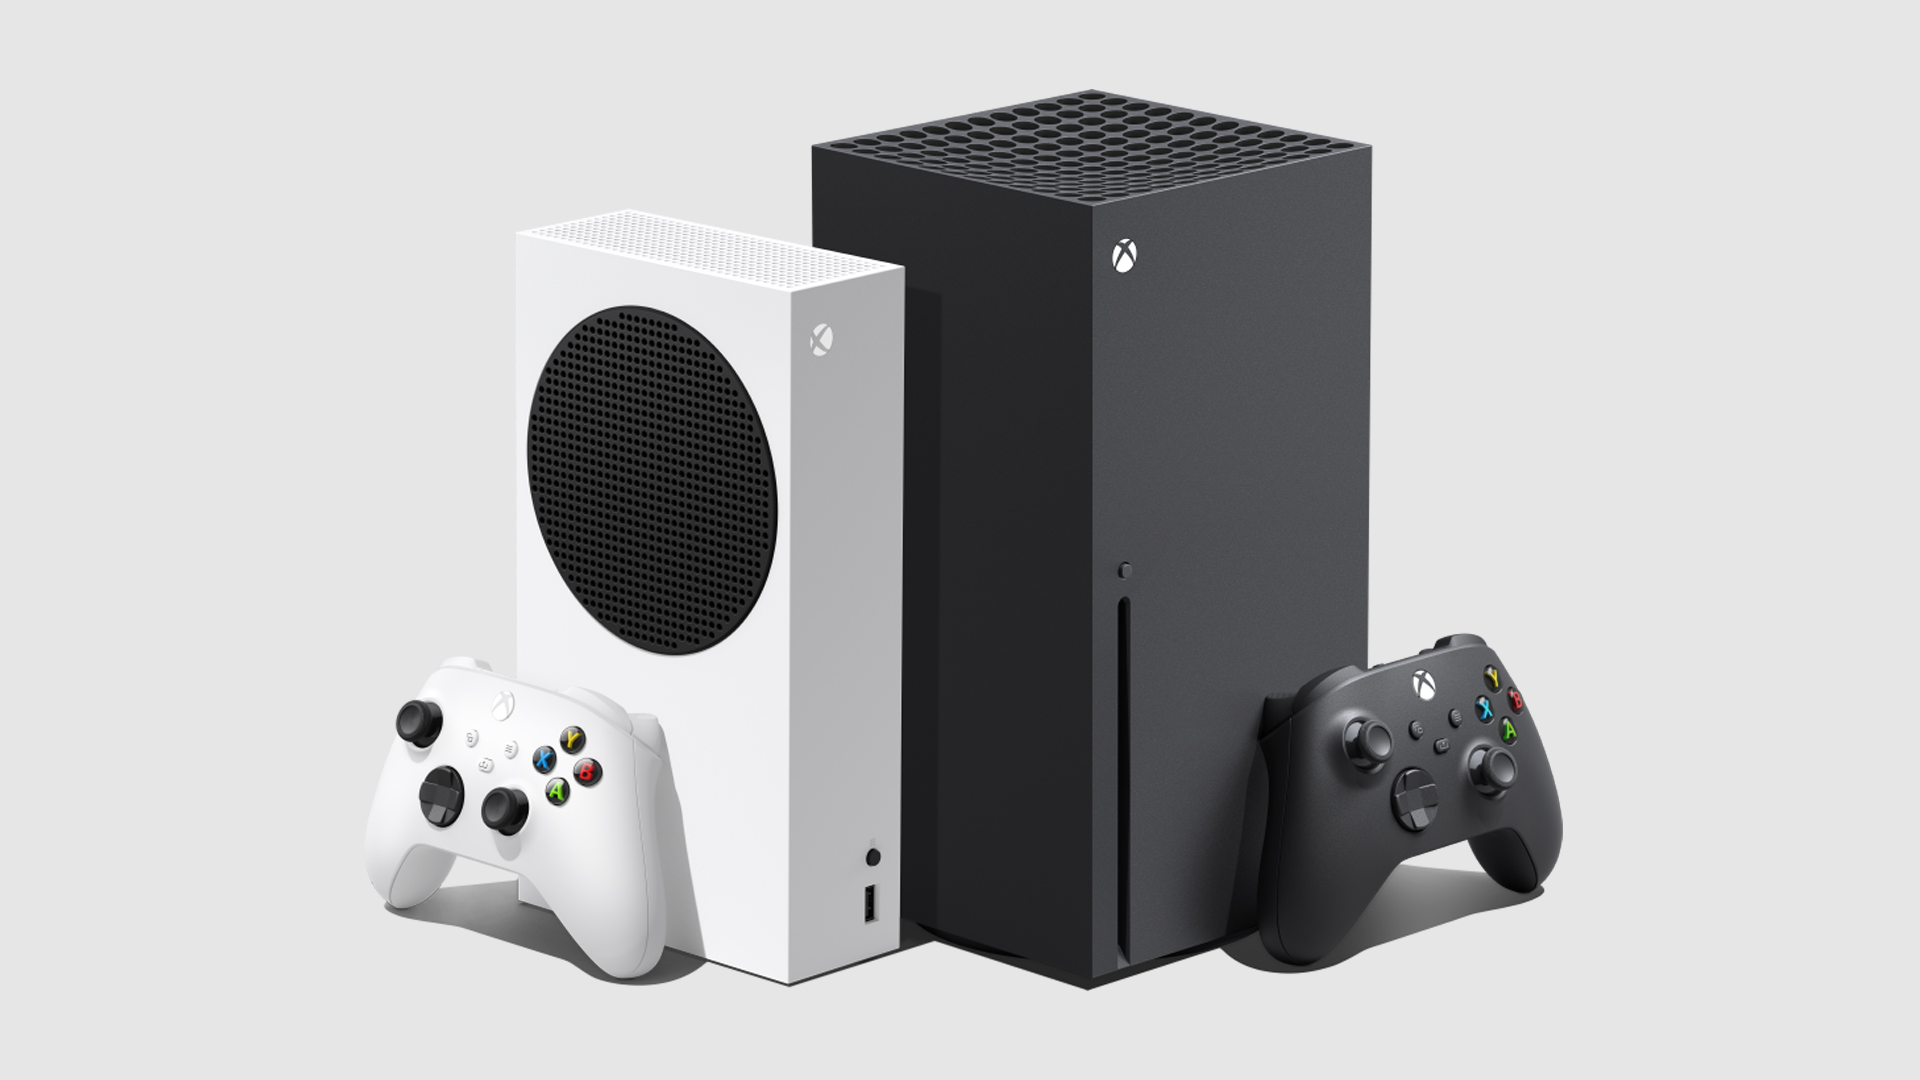 Lancement réussi pour la Xbox One de Microsoft - Challenges